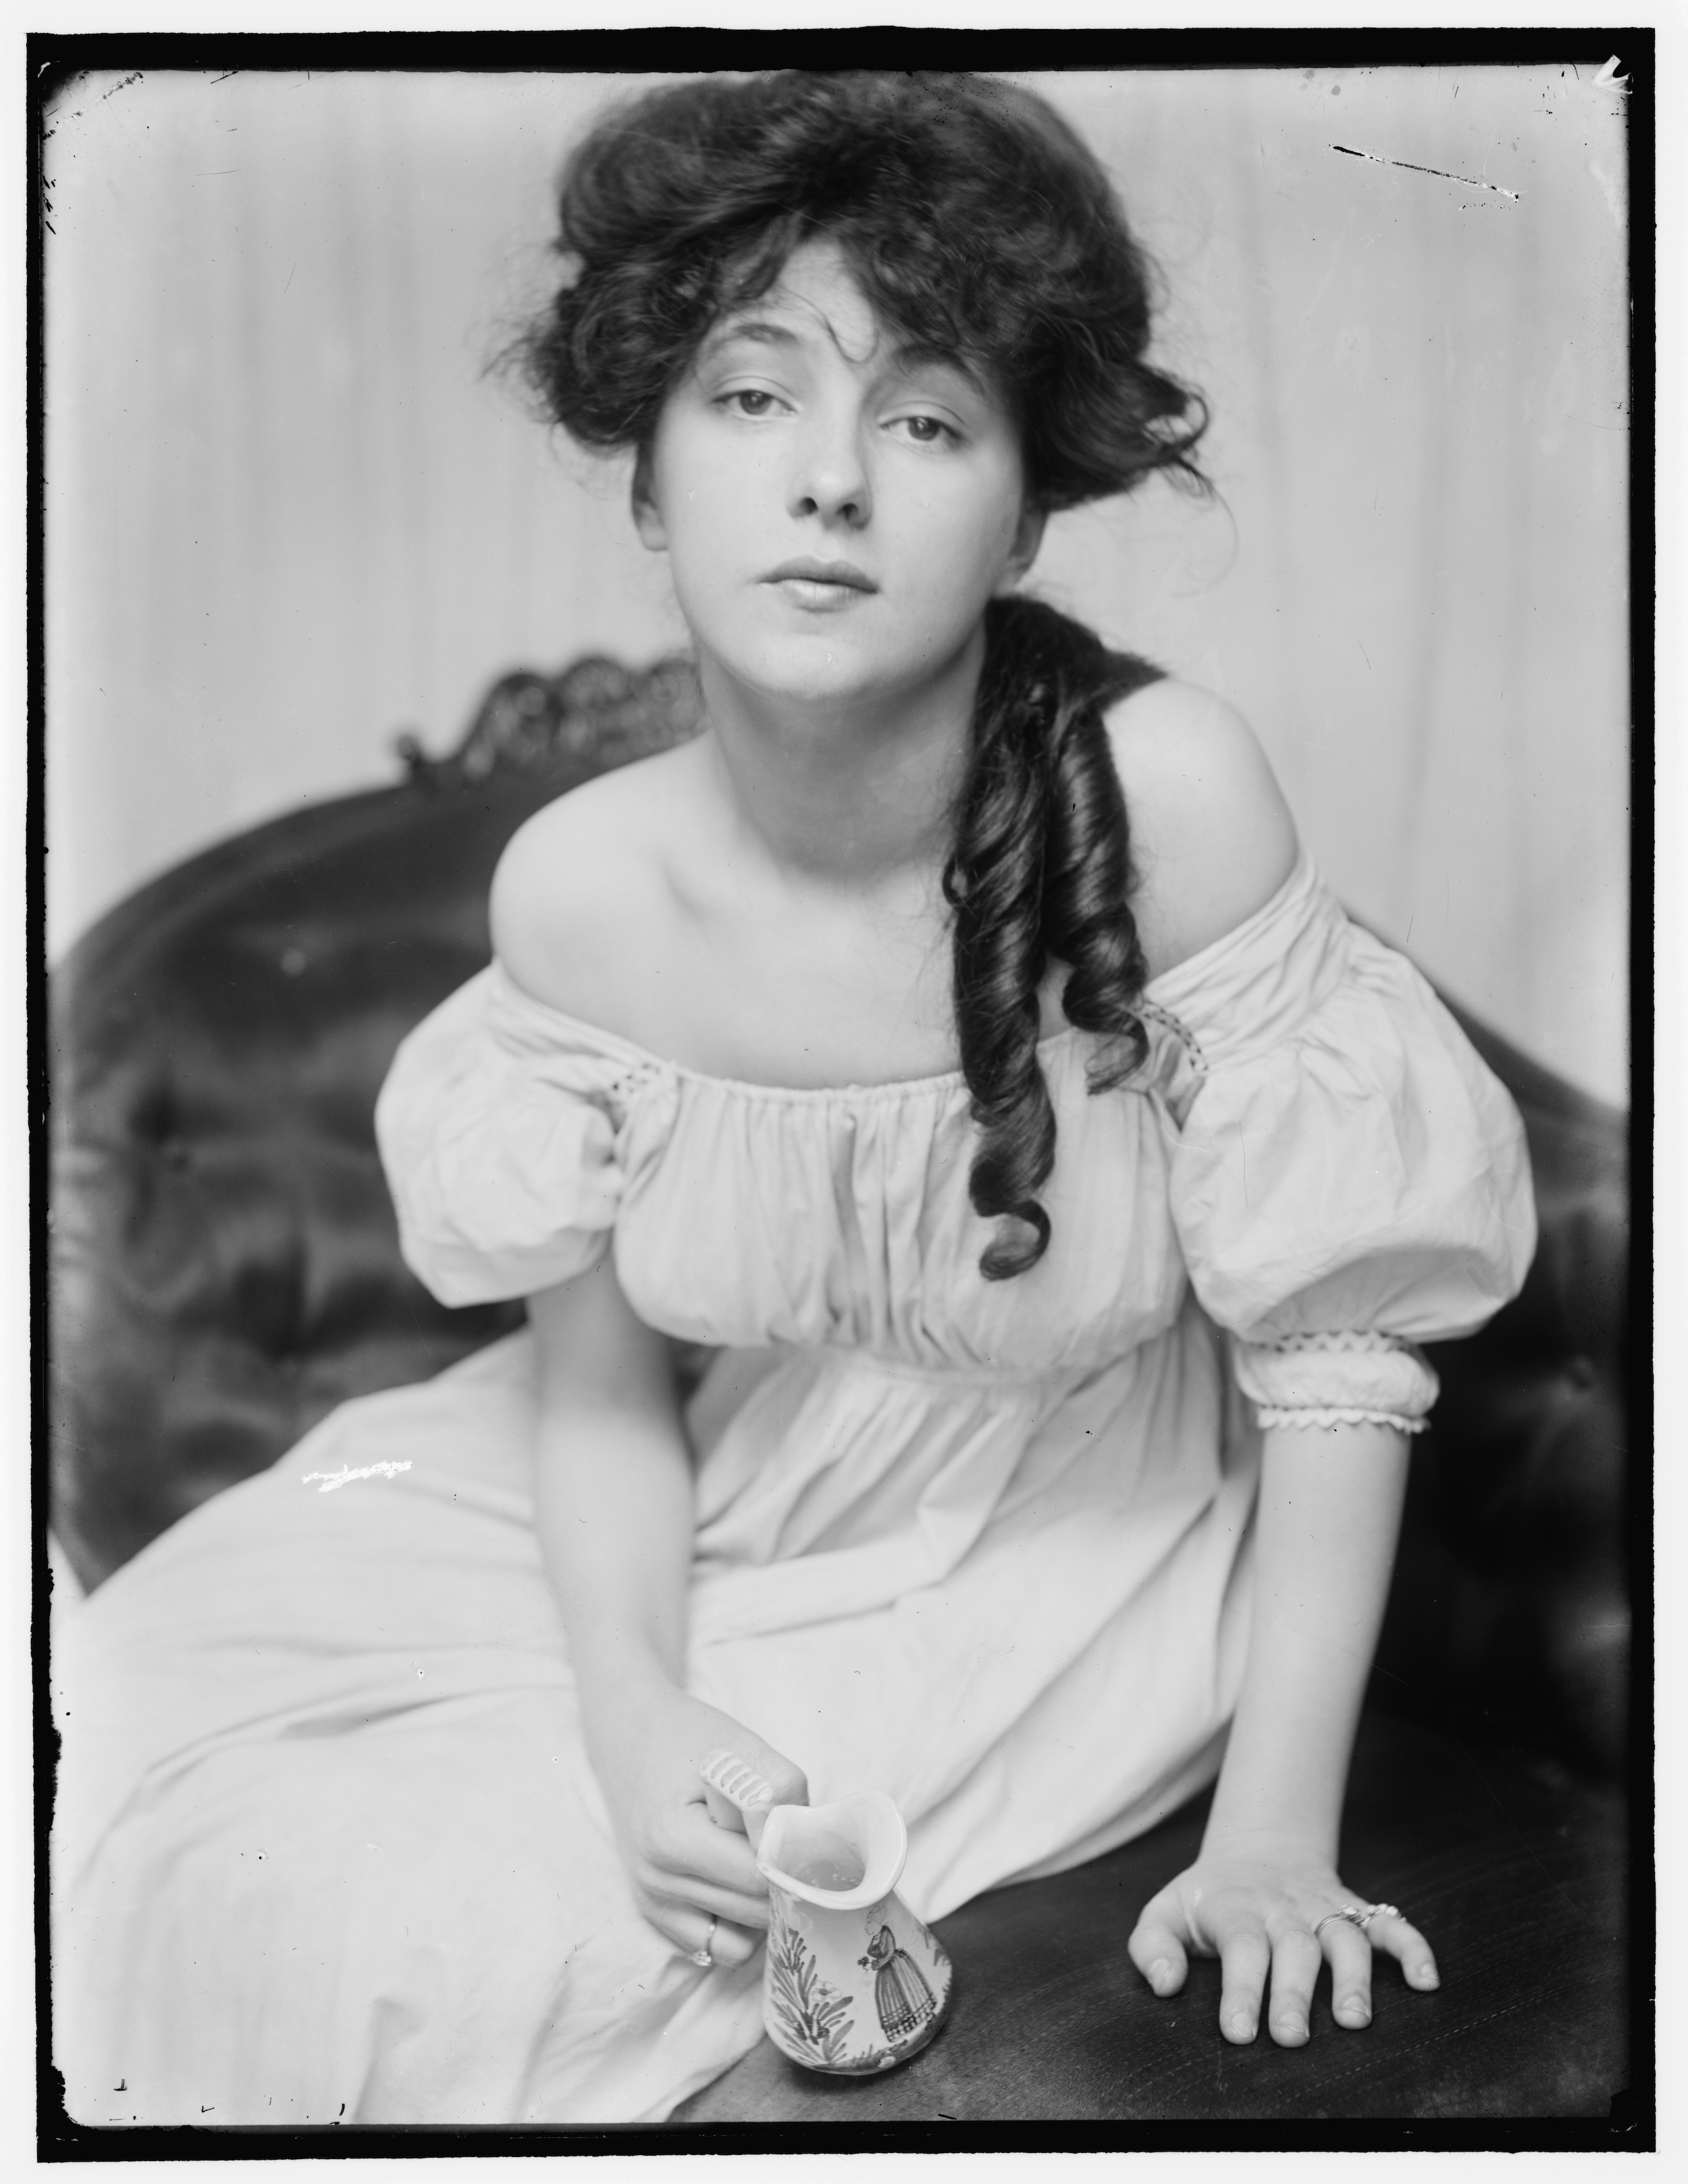 Evelyn Nesbit około 1900 roku w czasie, gdy została przyprowadzona do studia przez Stanforda White by Gertrude Käsebier - ok. 1900 - 8 x 10 cali 